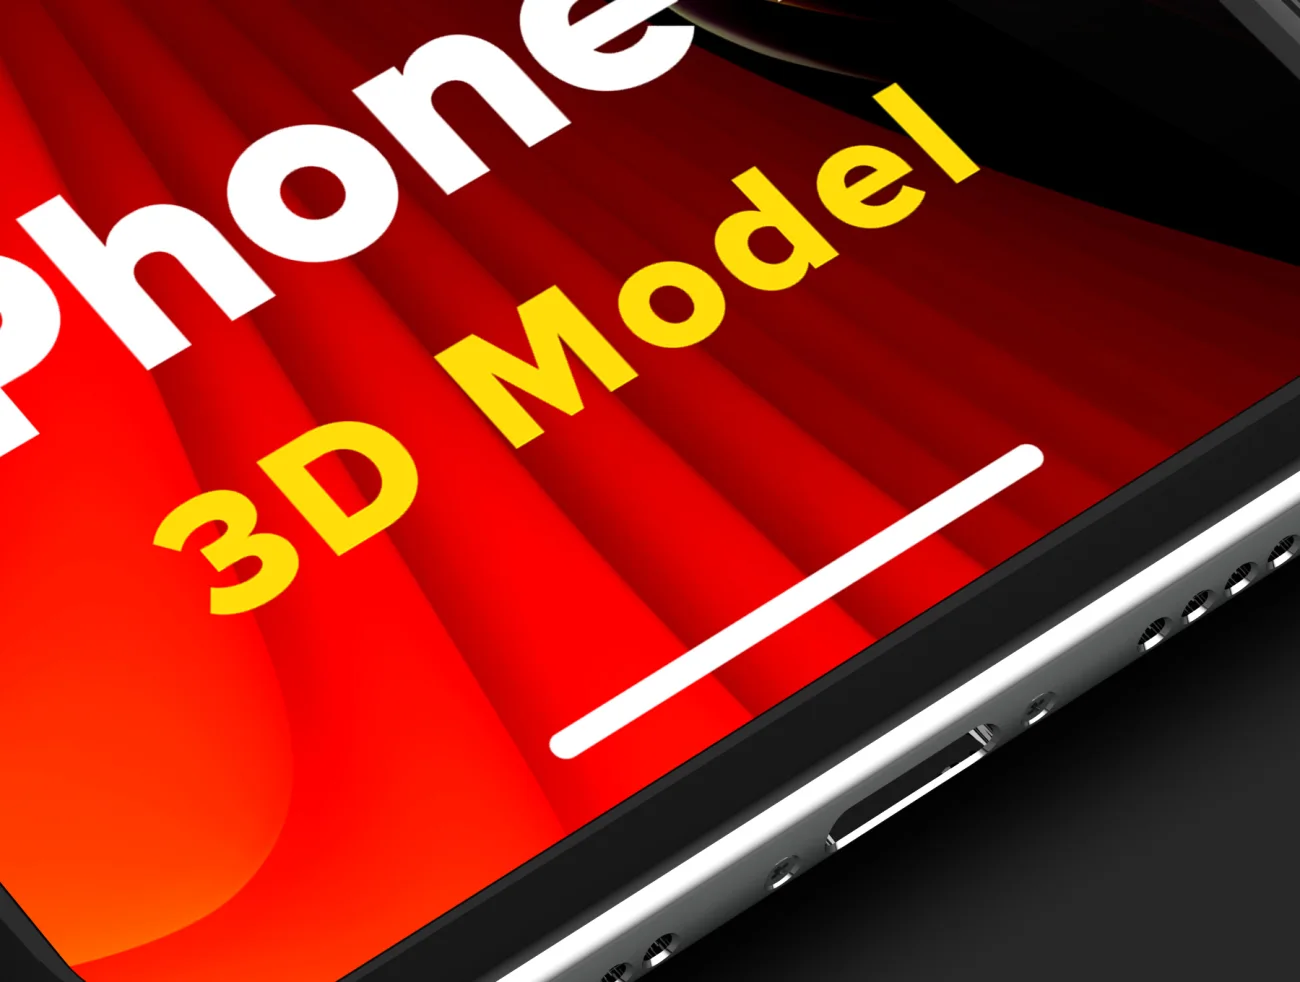 iPhone X 3D Model 苹果手机3D模型智能样机-产品展示、优雅样机、手机模型、样机、简约样机、苹果设备-到位啦UI